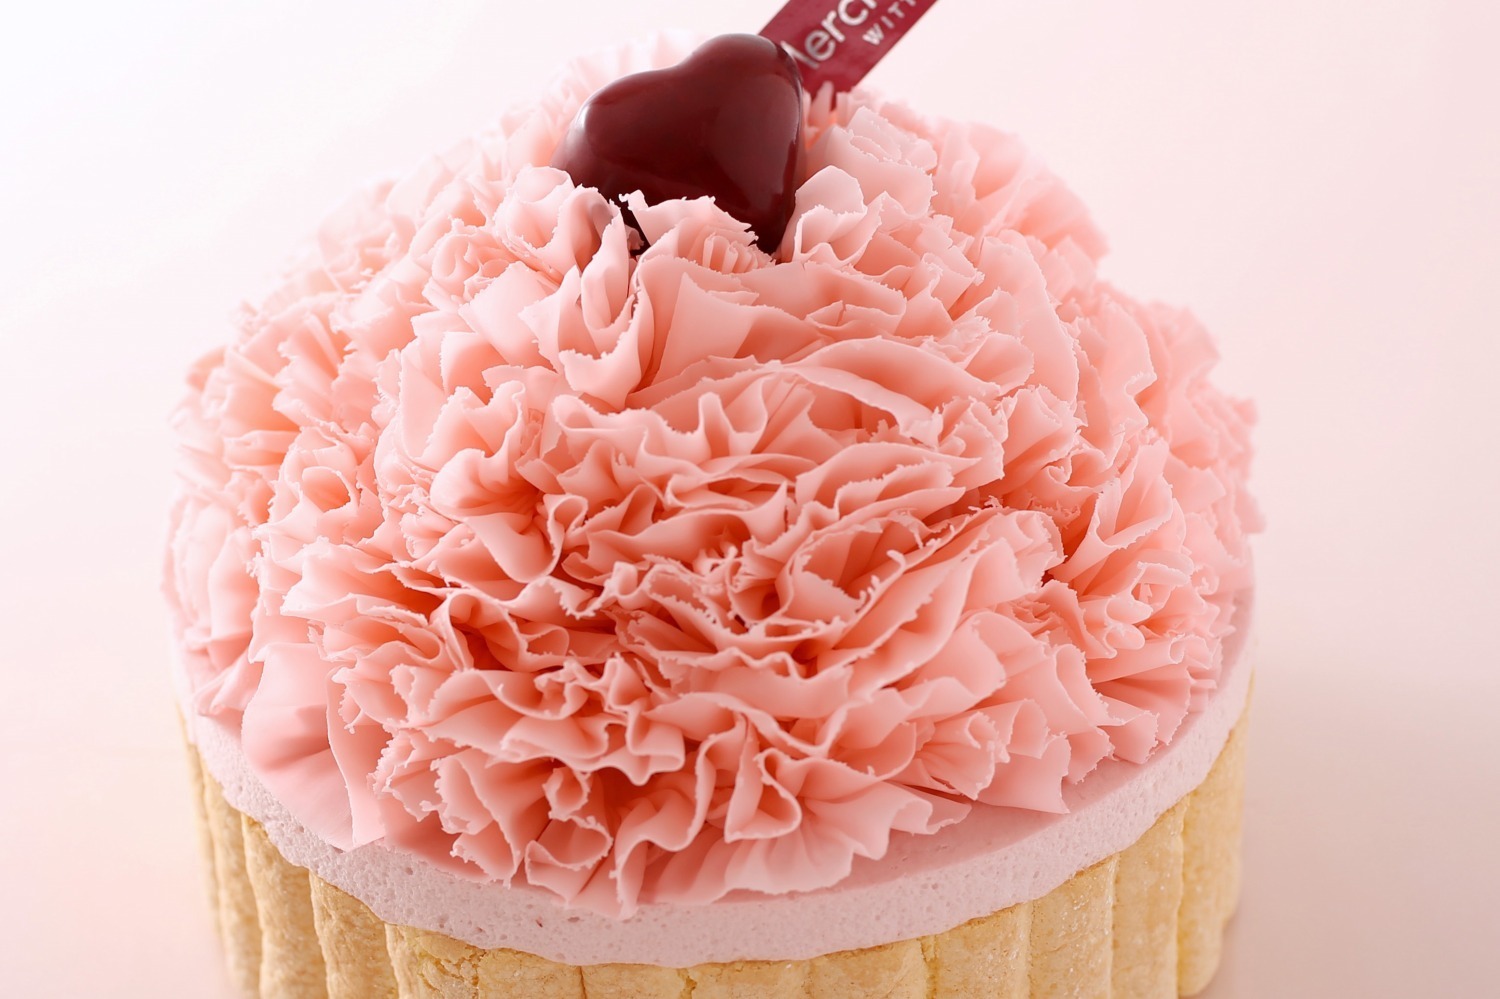 ヴィタメール母の日限定ケーキ、“ピンクカーネーション”の苺ケーキ